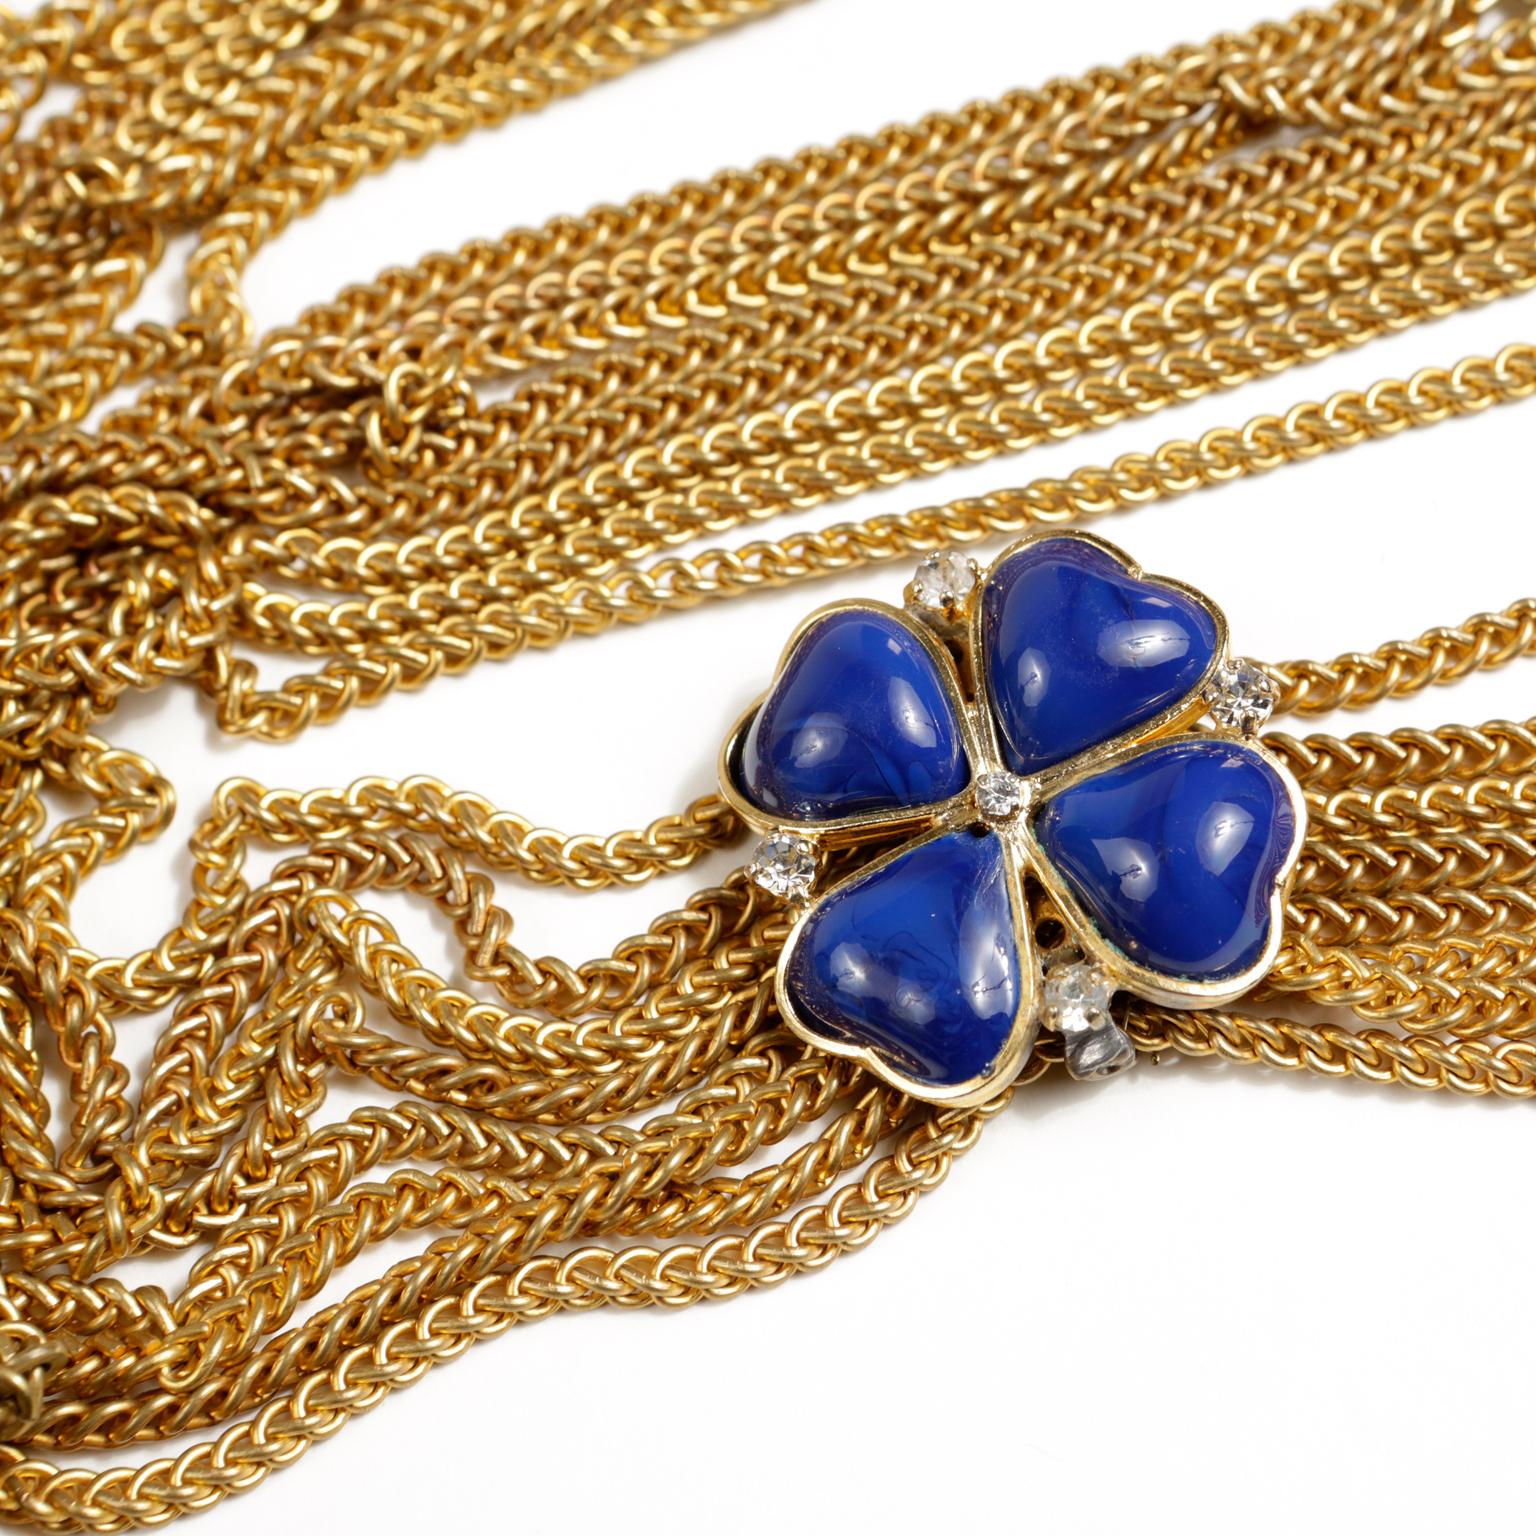 Diese authentische Chanel Blue Clover Gold Multi Chain Necklace ist in schönem Zustand.  Es handelt sich um einen frühen Jahrgang und gilt als sehr sammelwürdig.  Acht goldene Gliederketten werden von einem großen königsblauen vierblättrigen